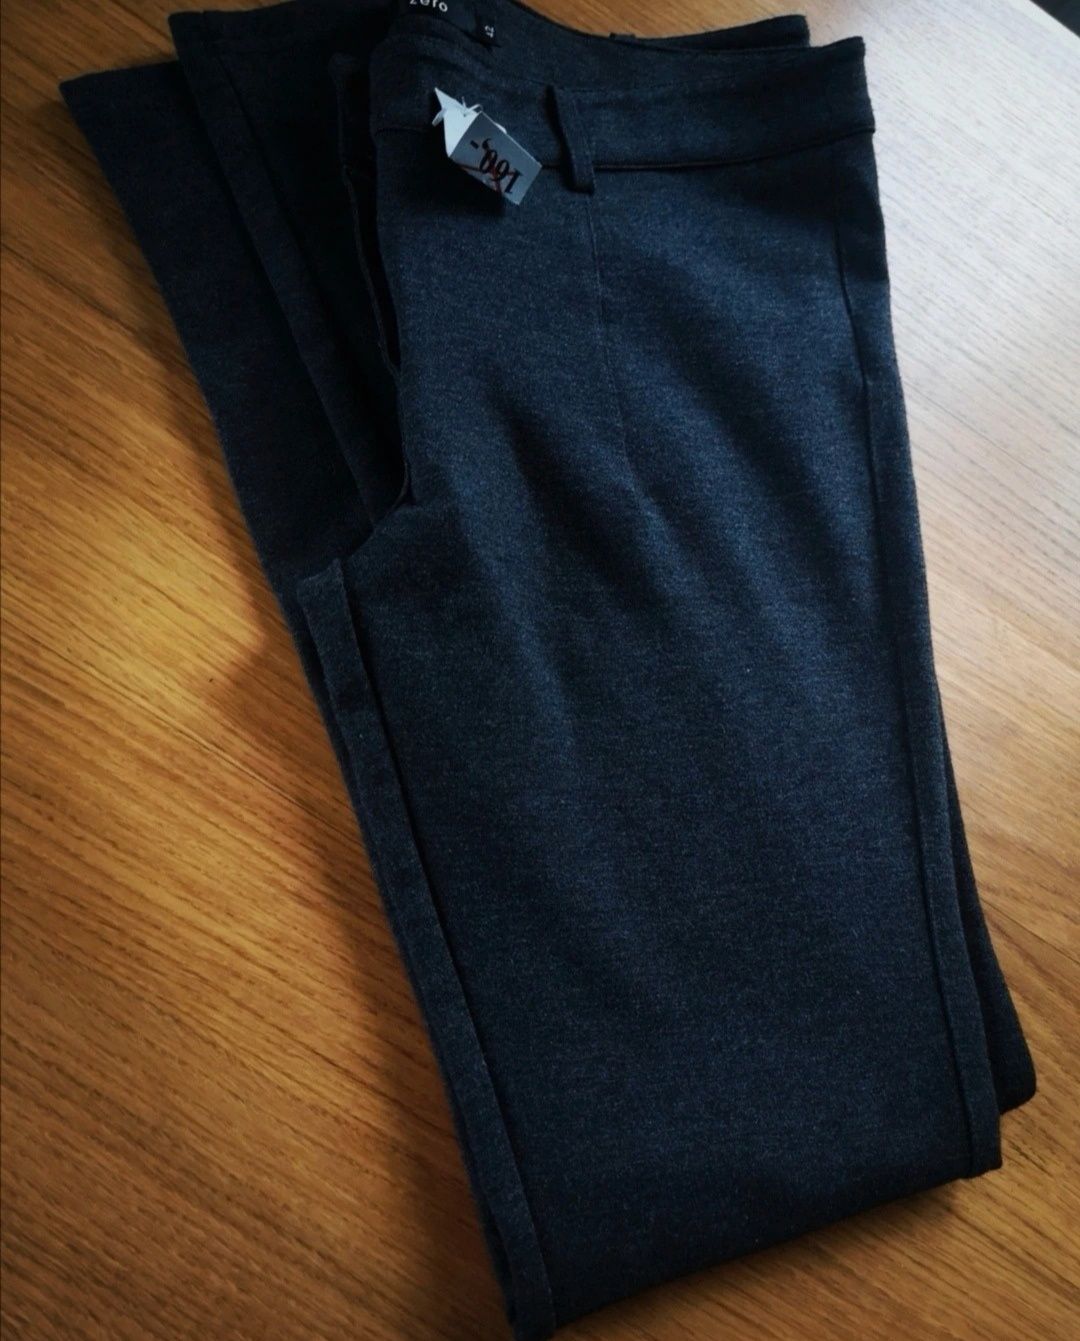 Spodnie damskie 42 XL markowe Zero szare porządne